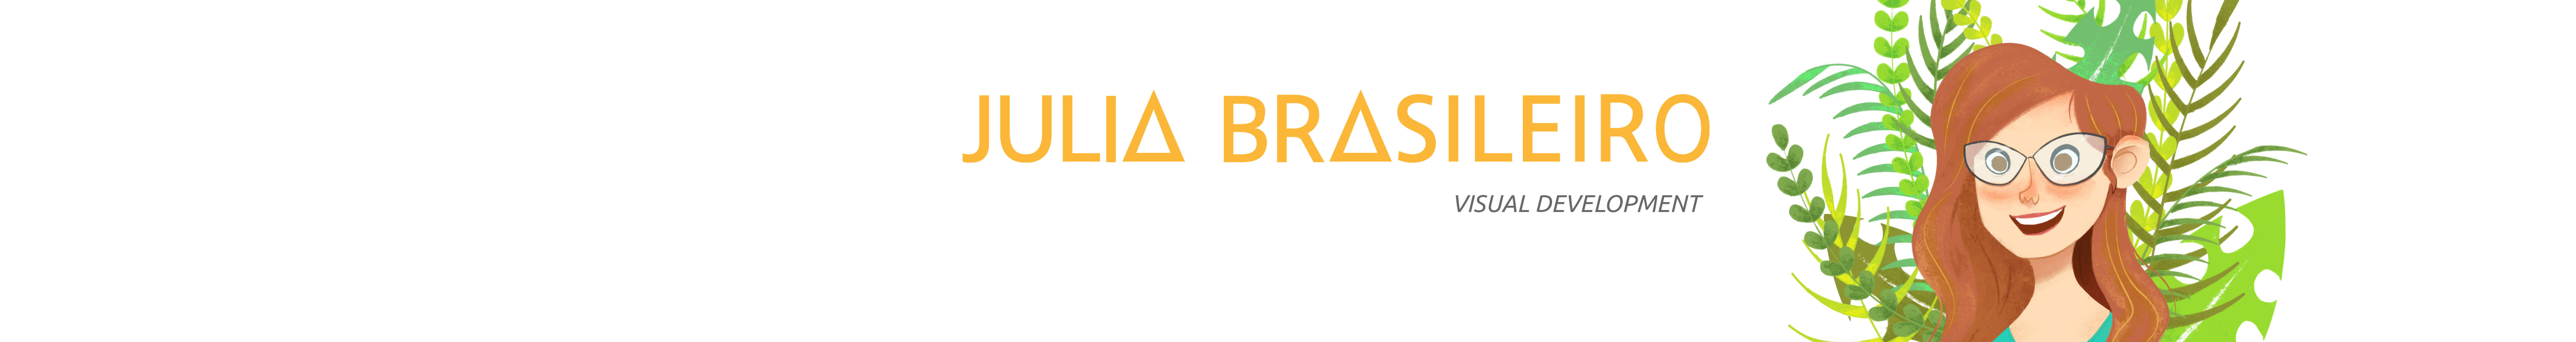 Julia Brasileiro's profile banner